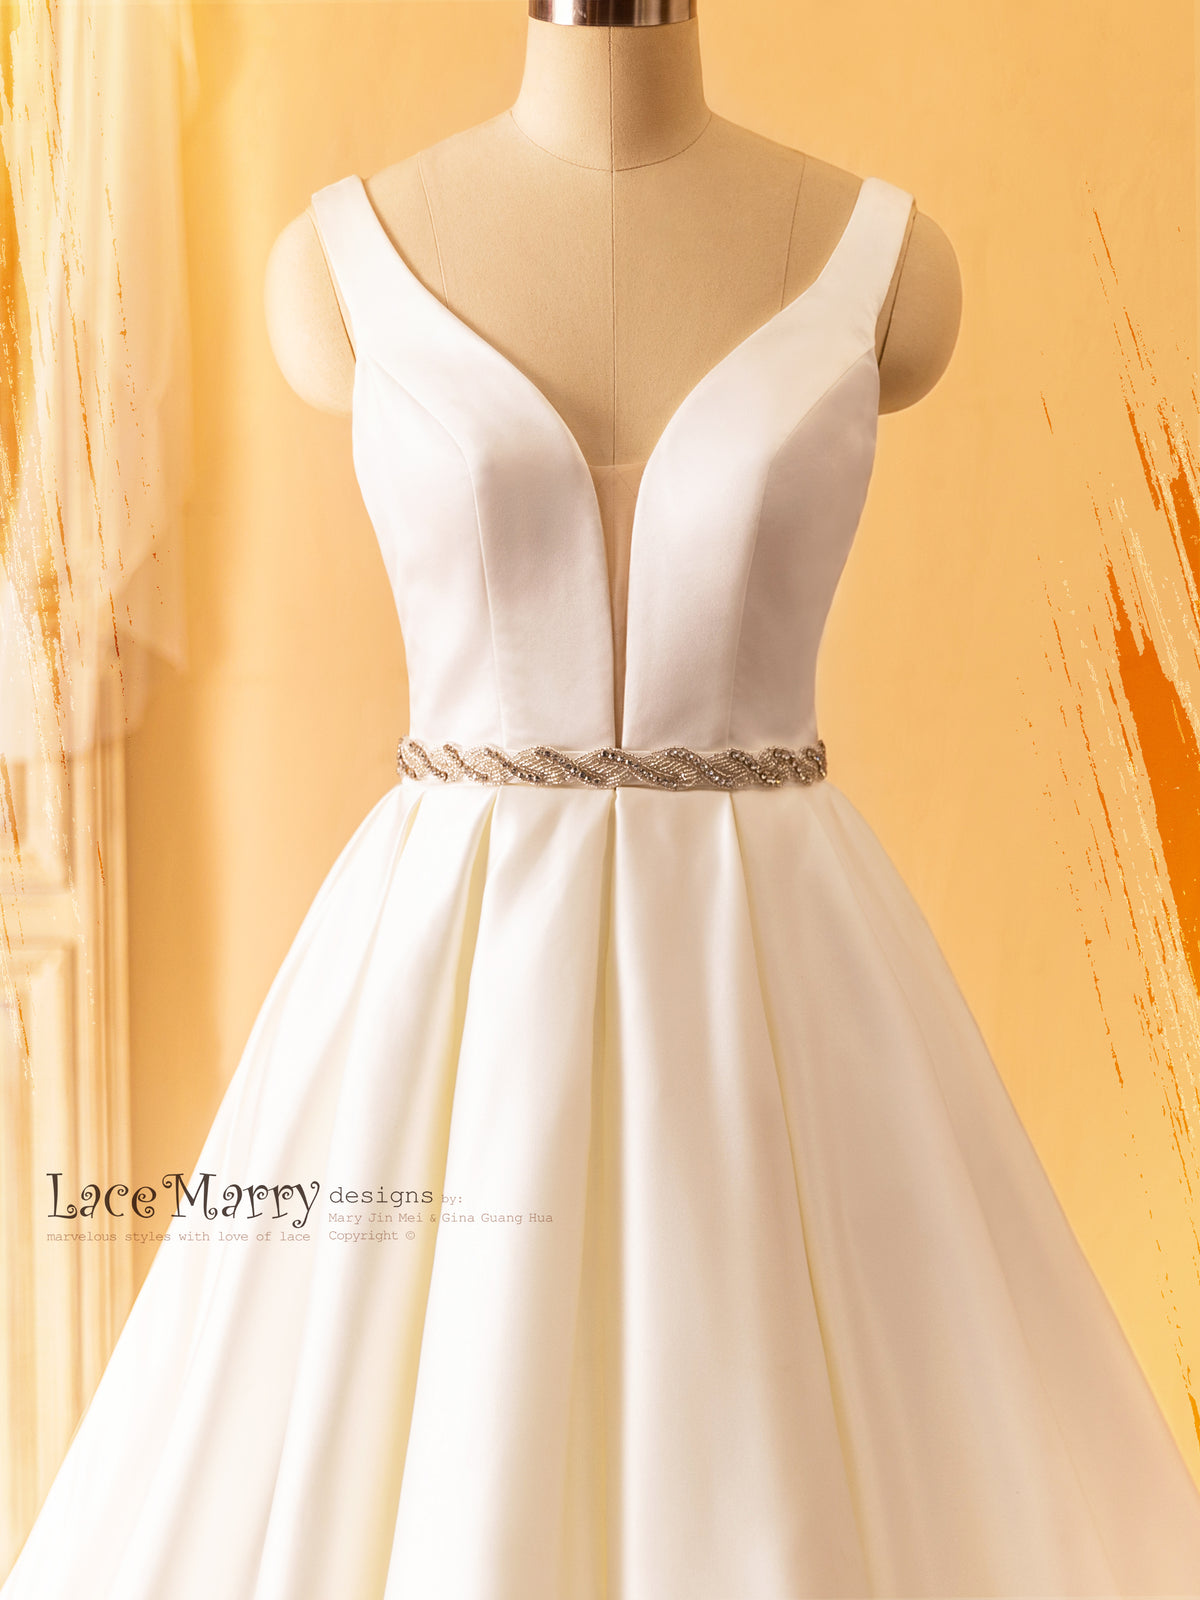 Plunge Neckline Wedding Dress in Plain Design